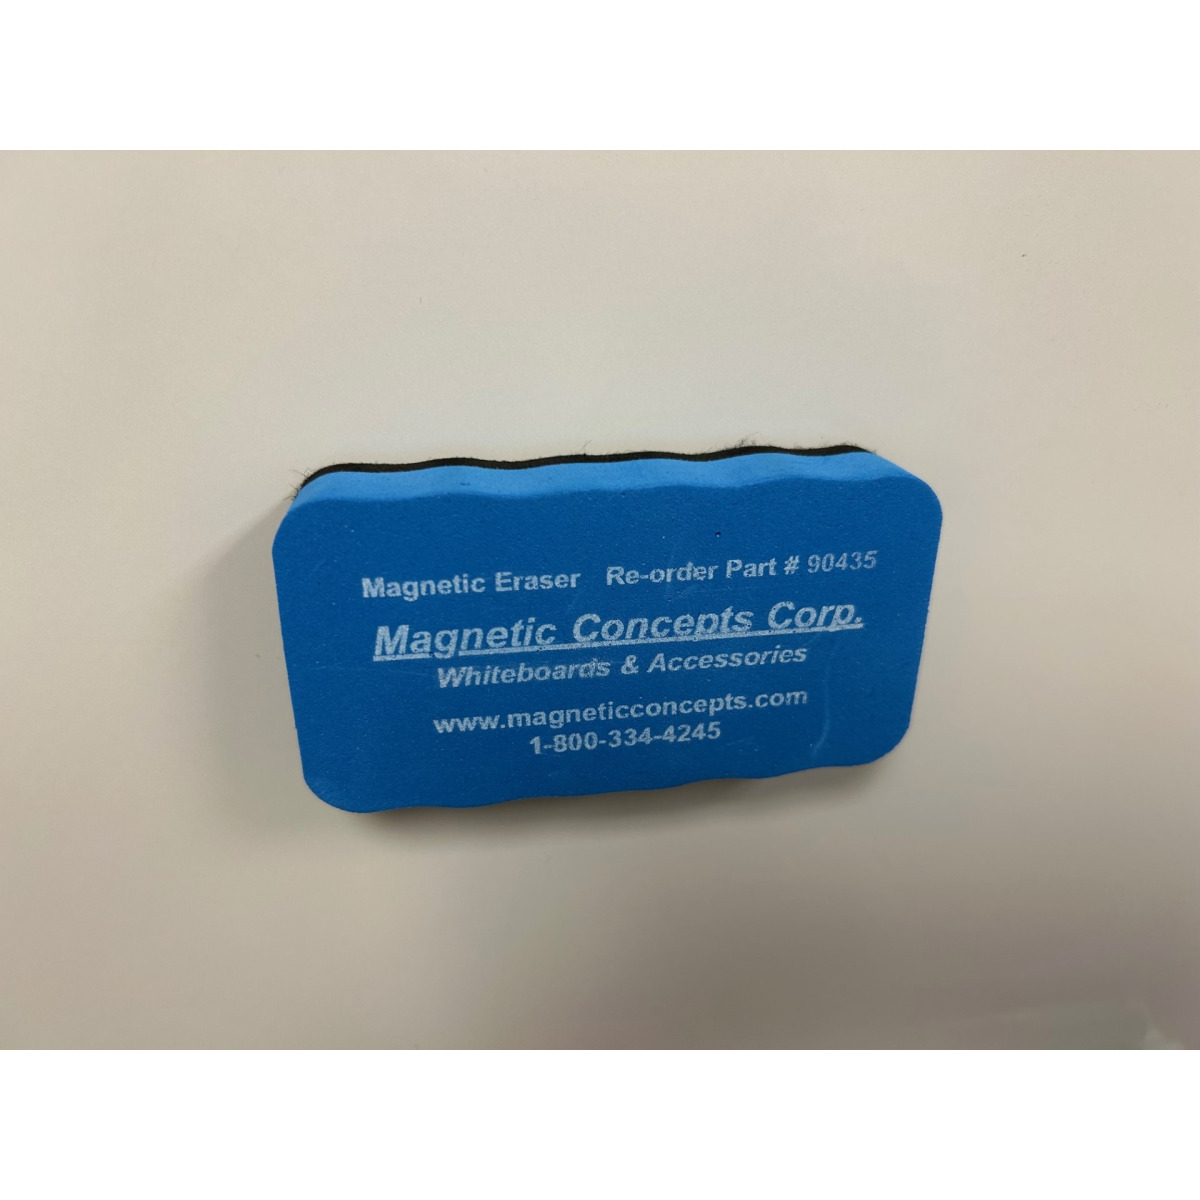 dry-erase eraser with magnetic back